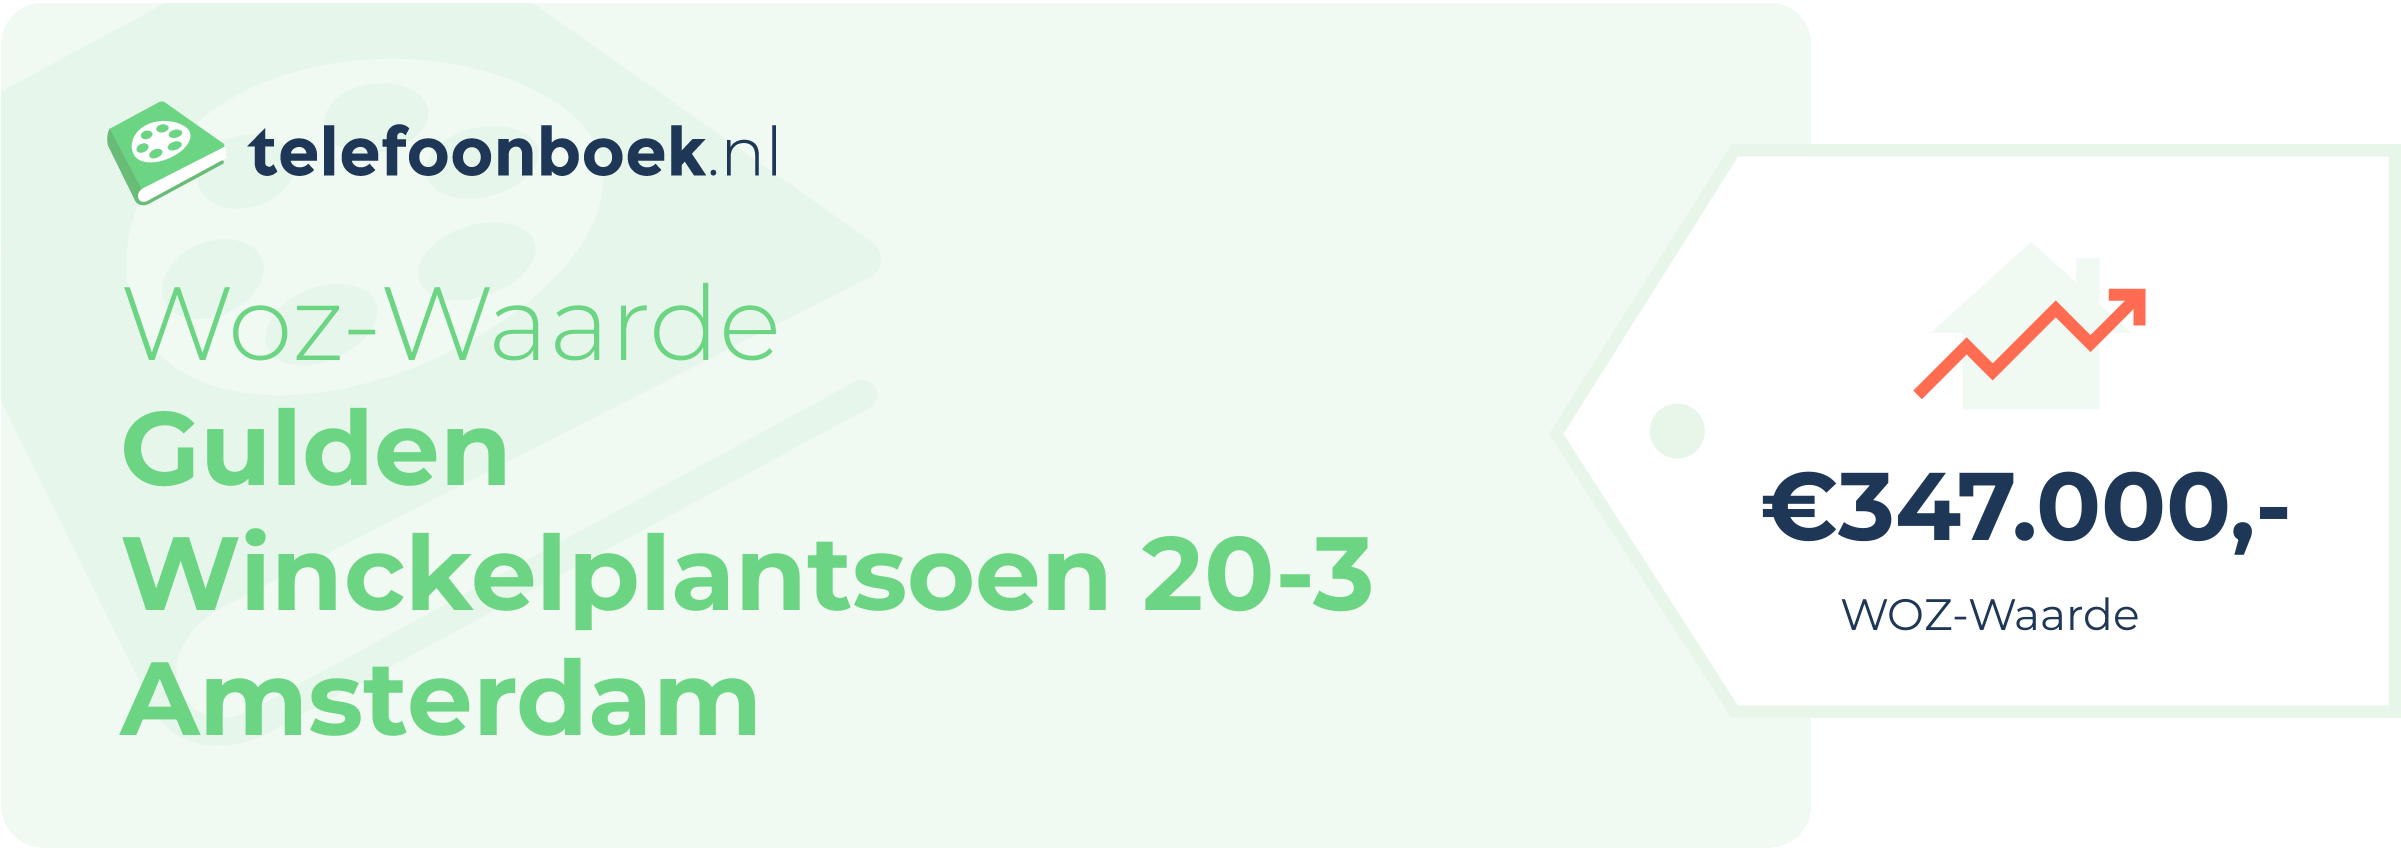 WOZ-waarde Gulden Winckelplantsoen 20-3 Amsterdam